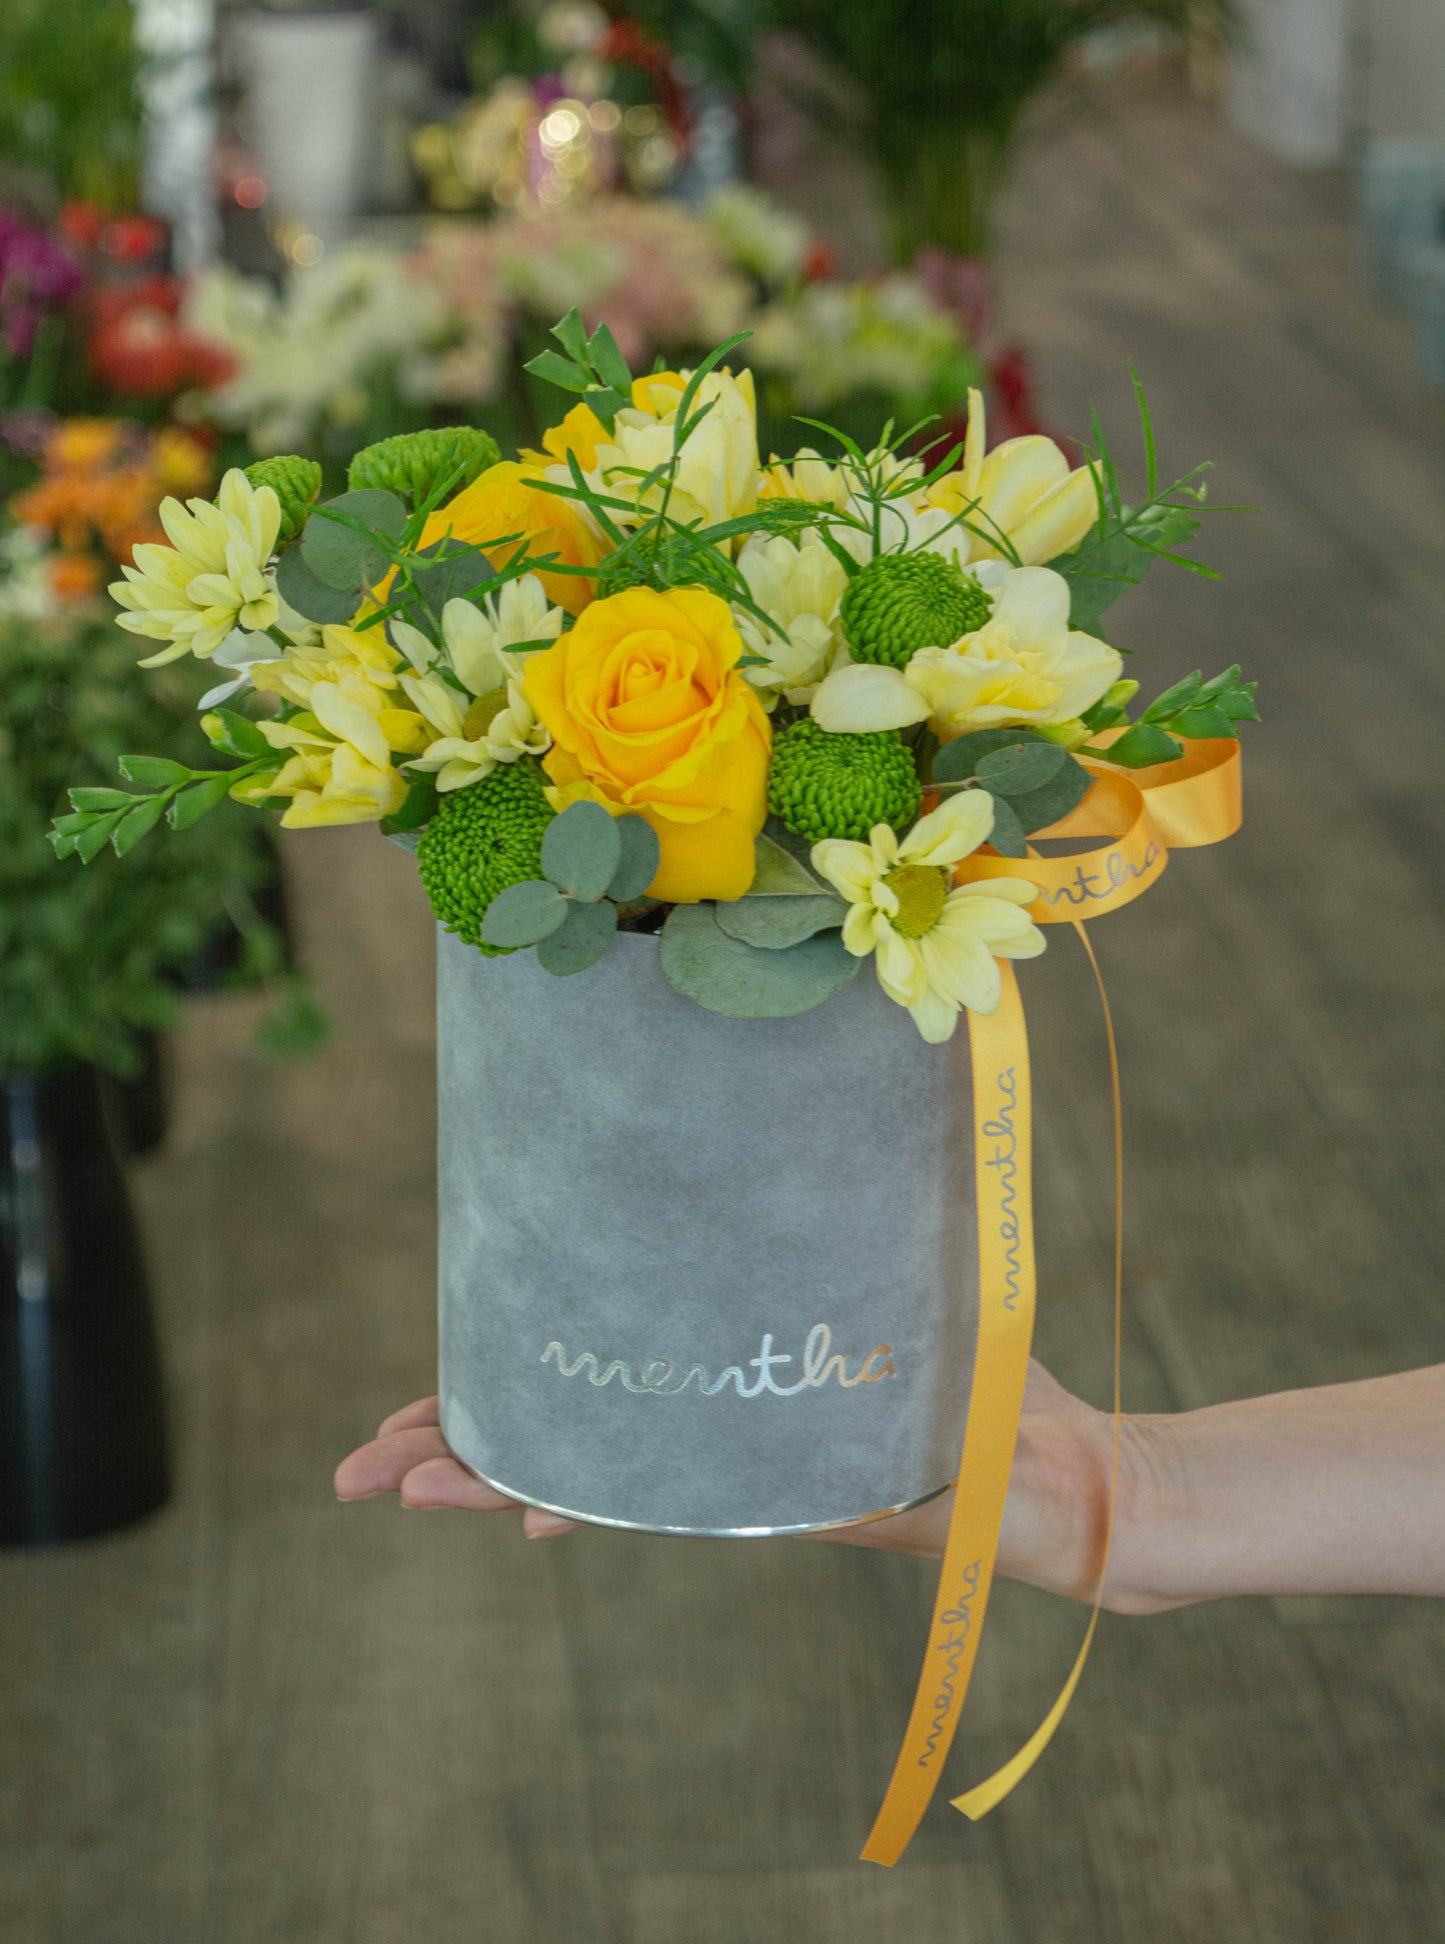 Flori galbene și verzi în cutie de vară - livrare gratuită flori în Reșița